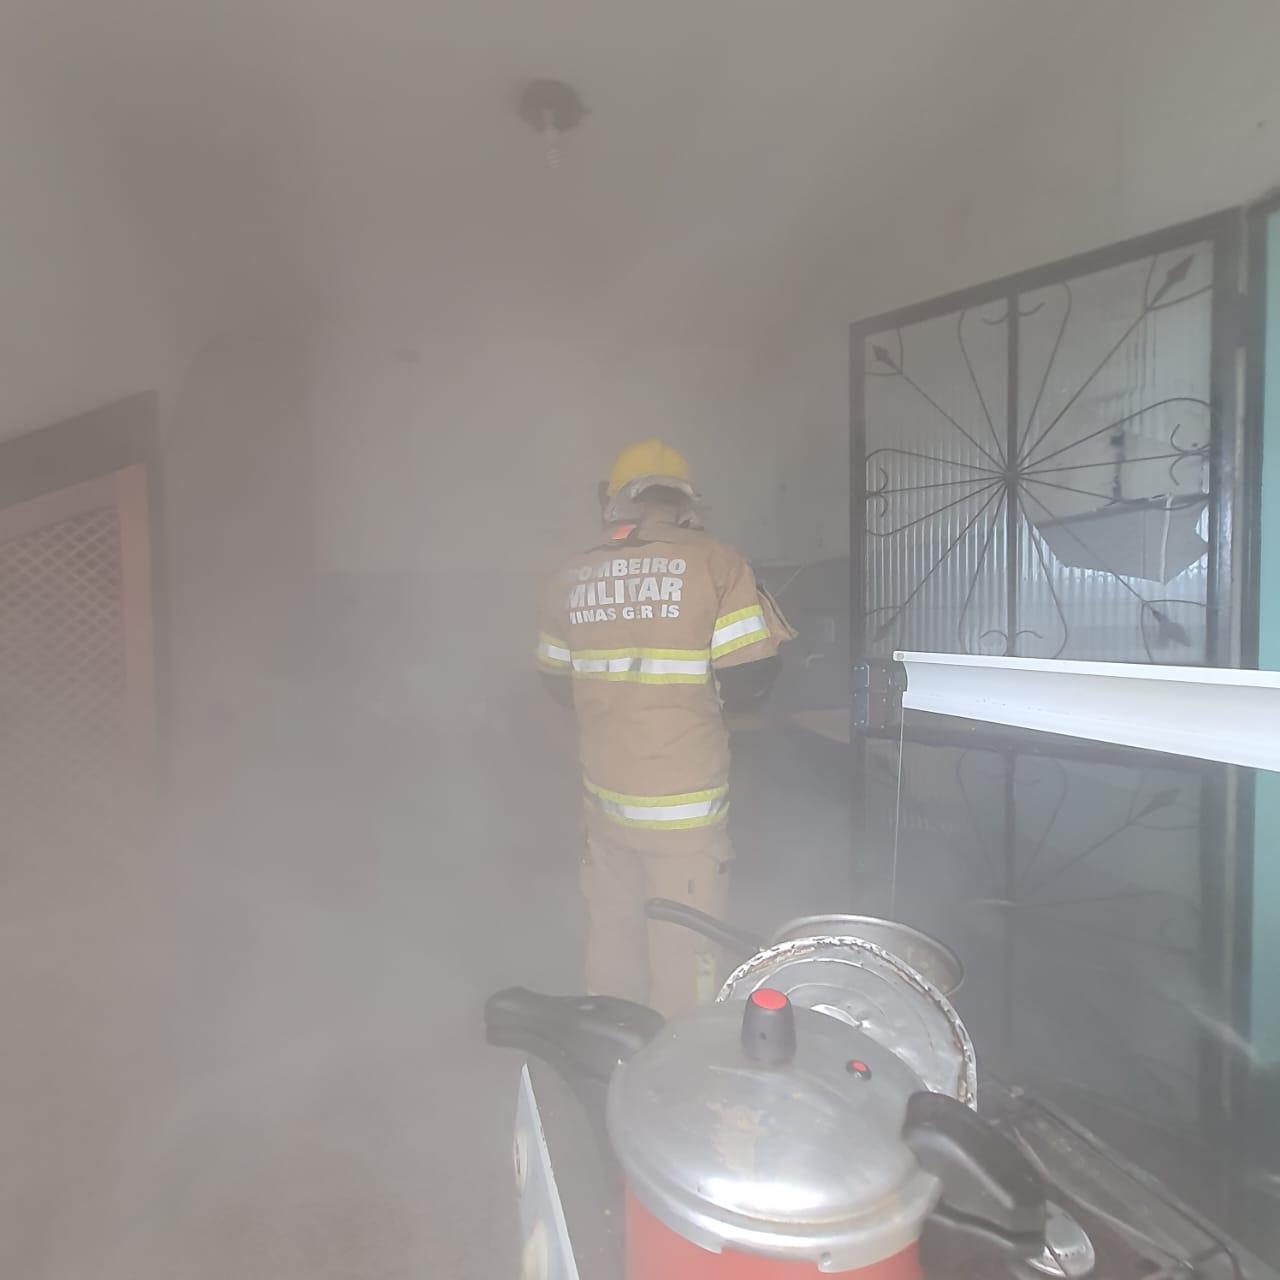 Bombeiros atendem incêndio em residência no bairro Grogotó